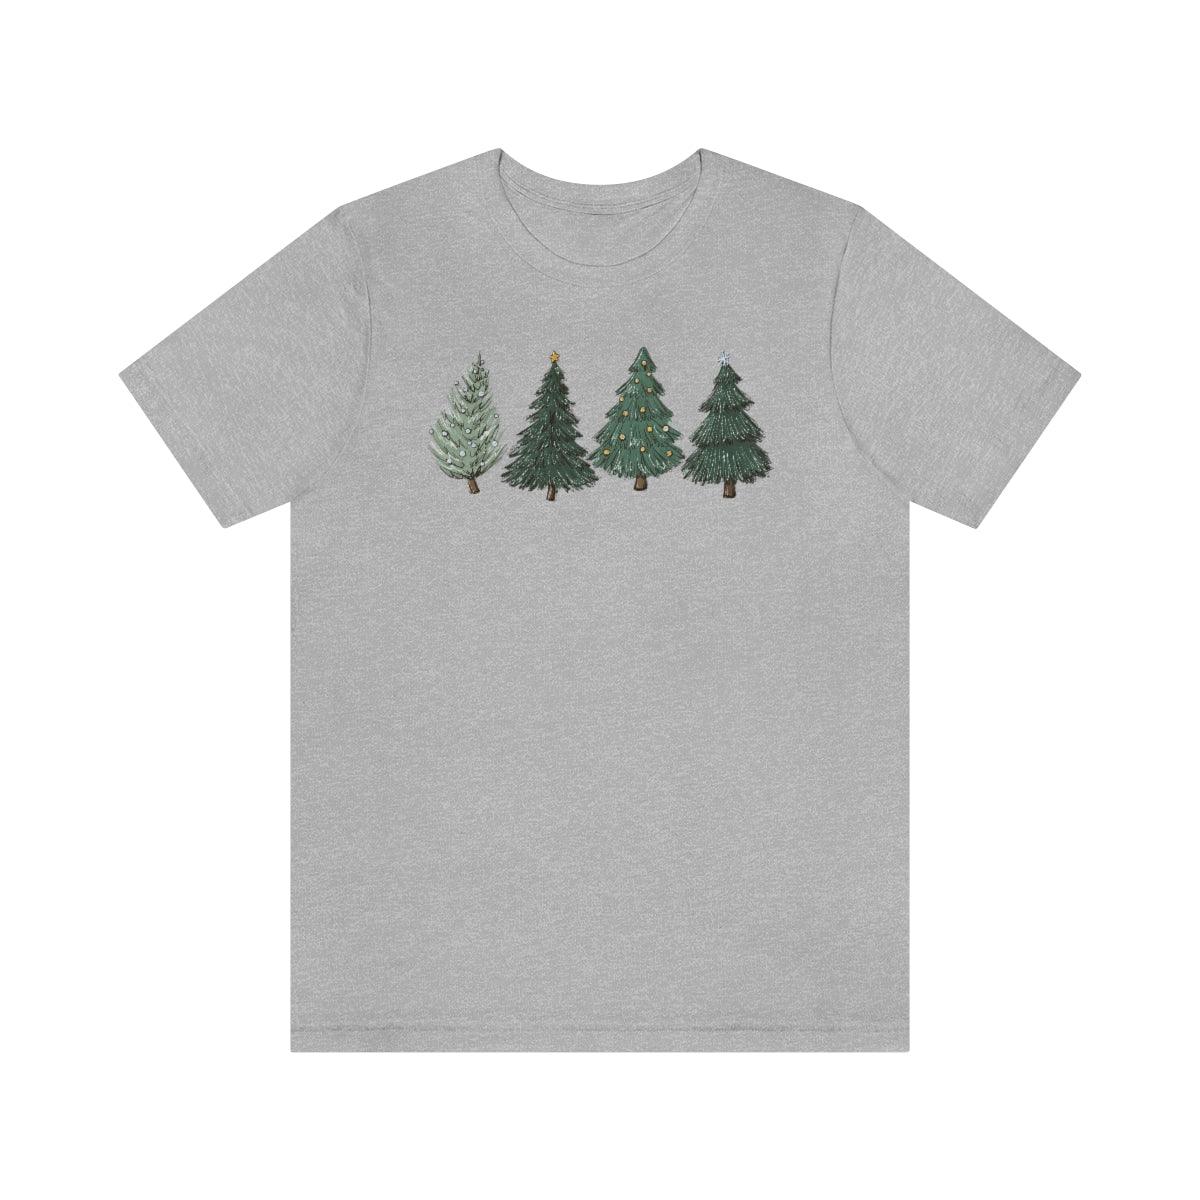 Christmas Trees Holiday Christmas Shirt Short Sleeve Tee